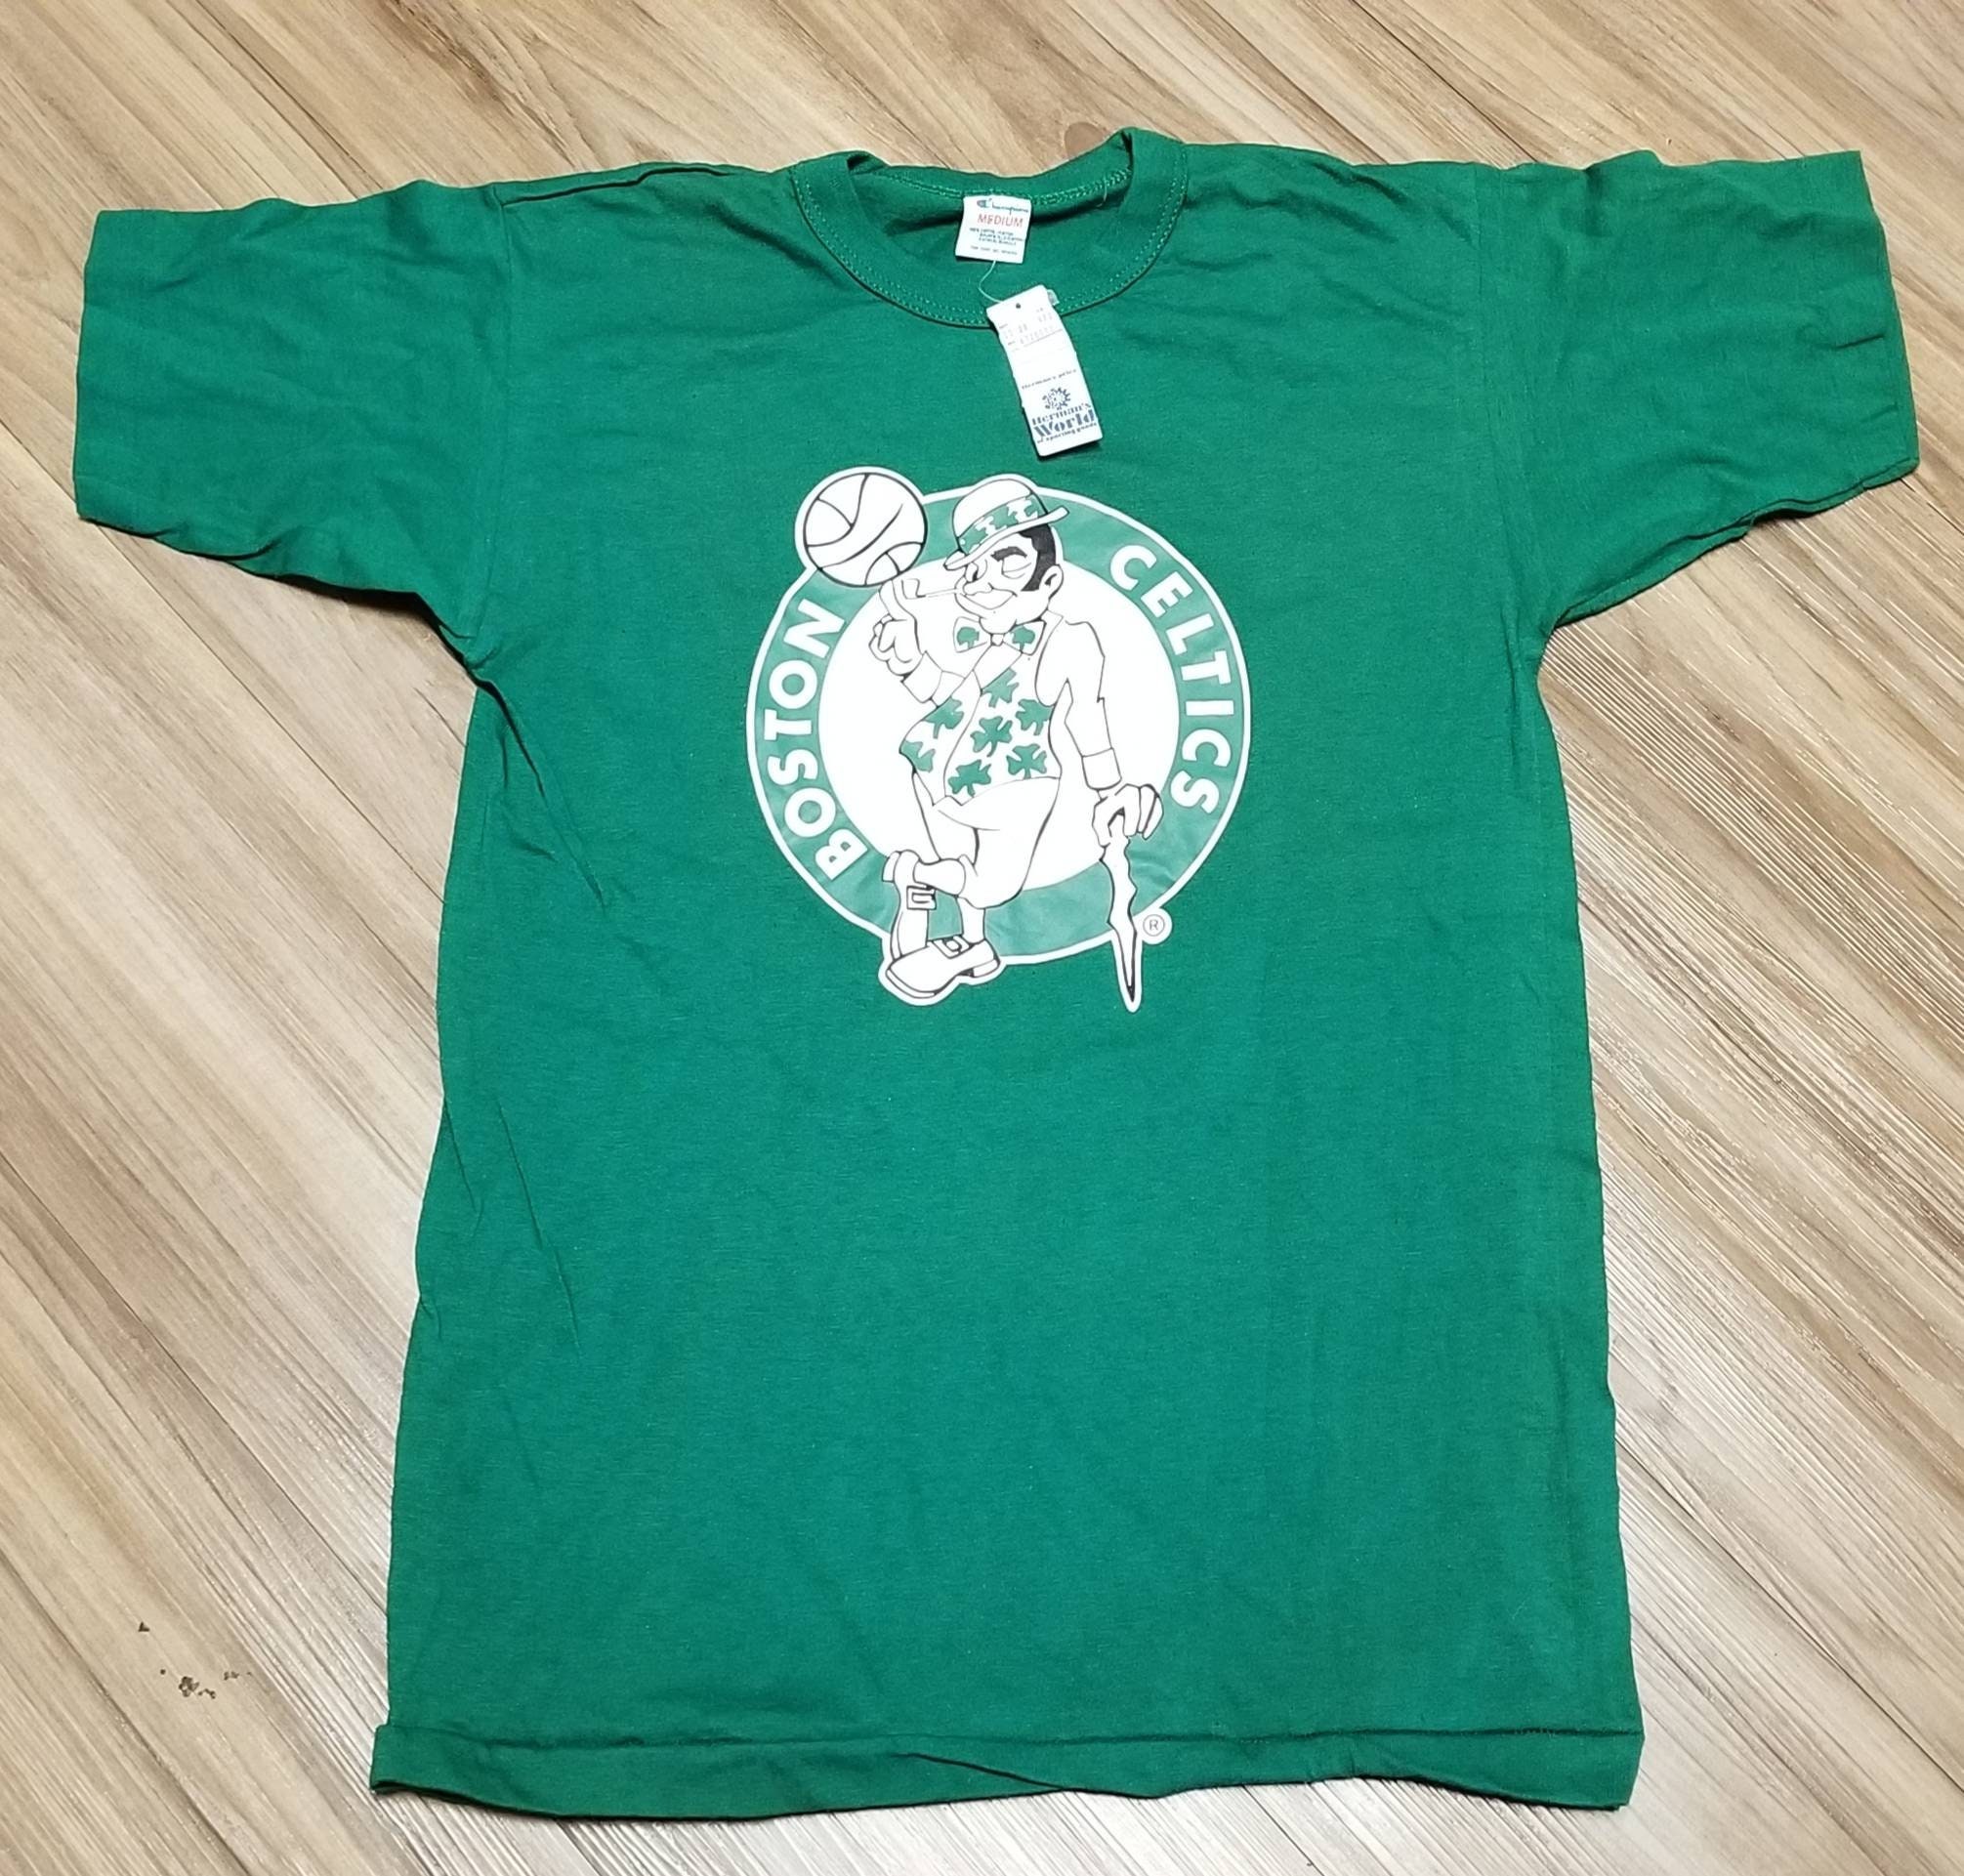 GREEN Larry Bird Boston Celtics 3 Point Contest T-shirt shirt jersey S-5XL